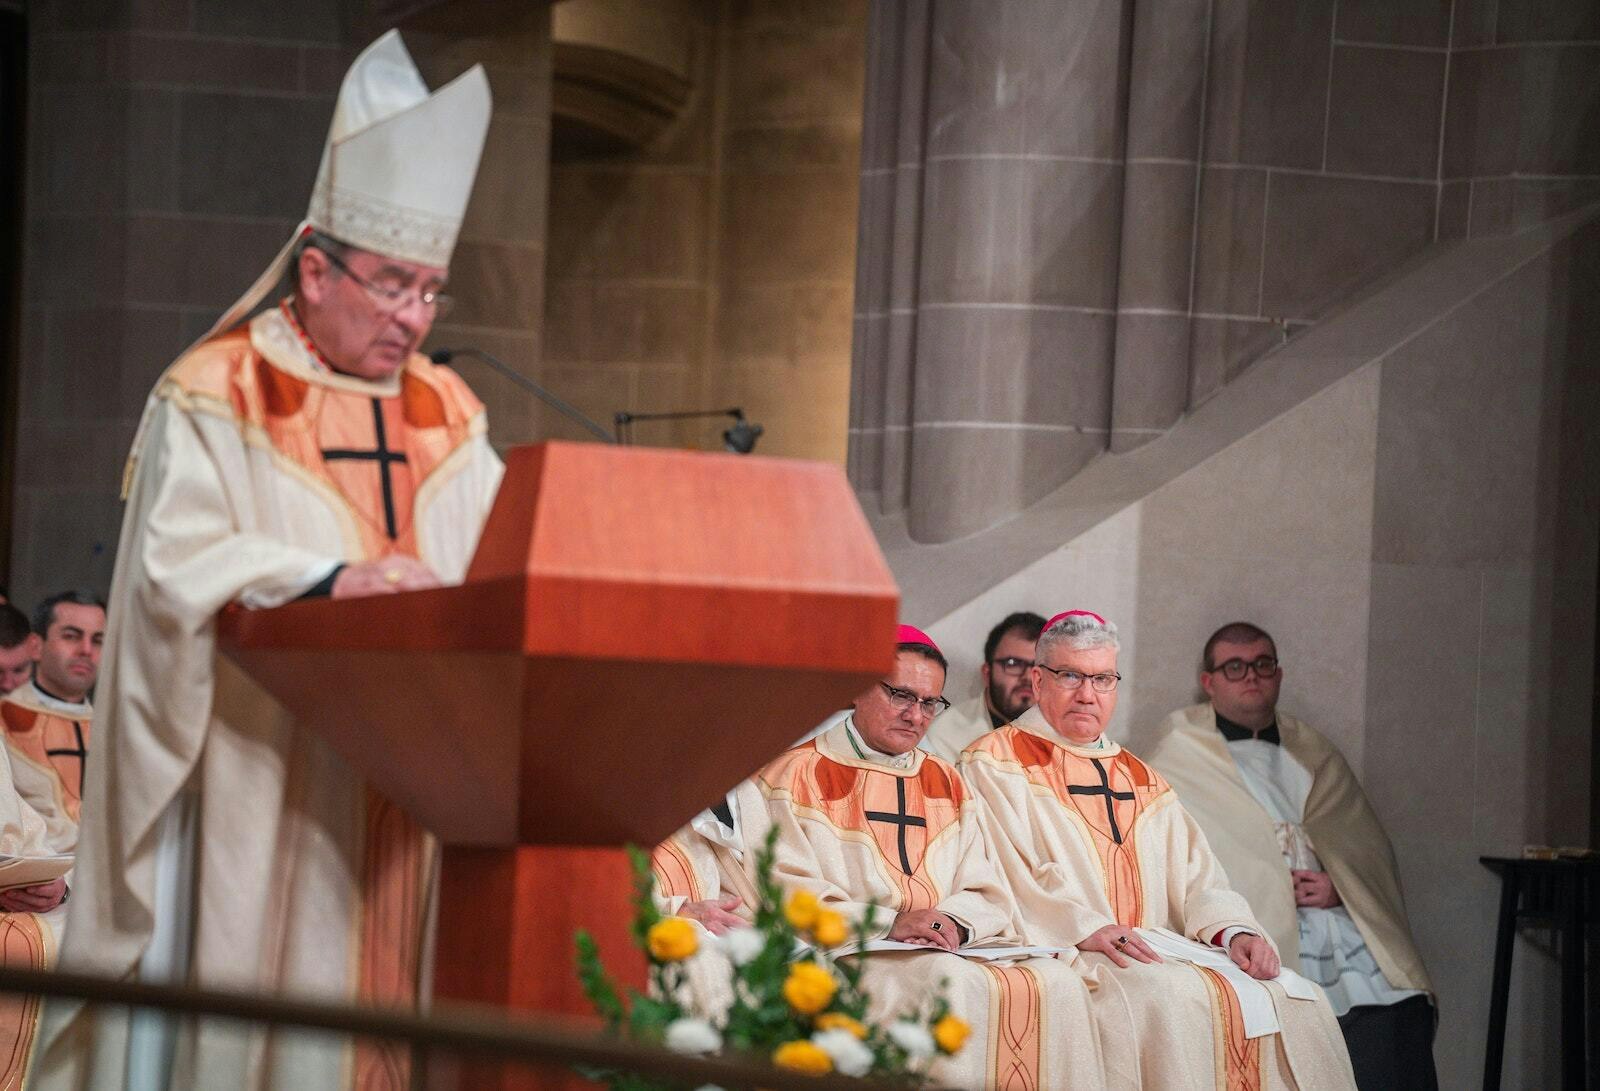 El Obispo Monforton (derecha) escucha mientras el Cardenal Christophe Pierre, nuncio apostólico de Estados Unidos, lee la proclamación del Papa Francisco asignándole un nuevo ministerio en la Arquidiócesis de Detroit.